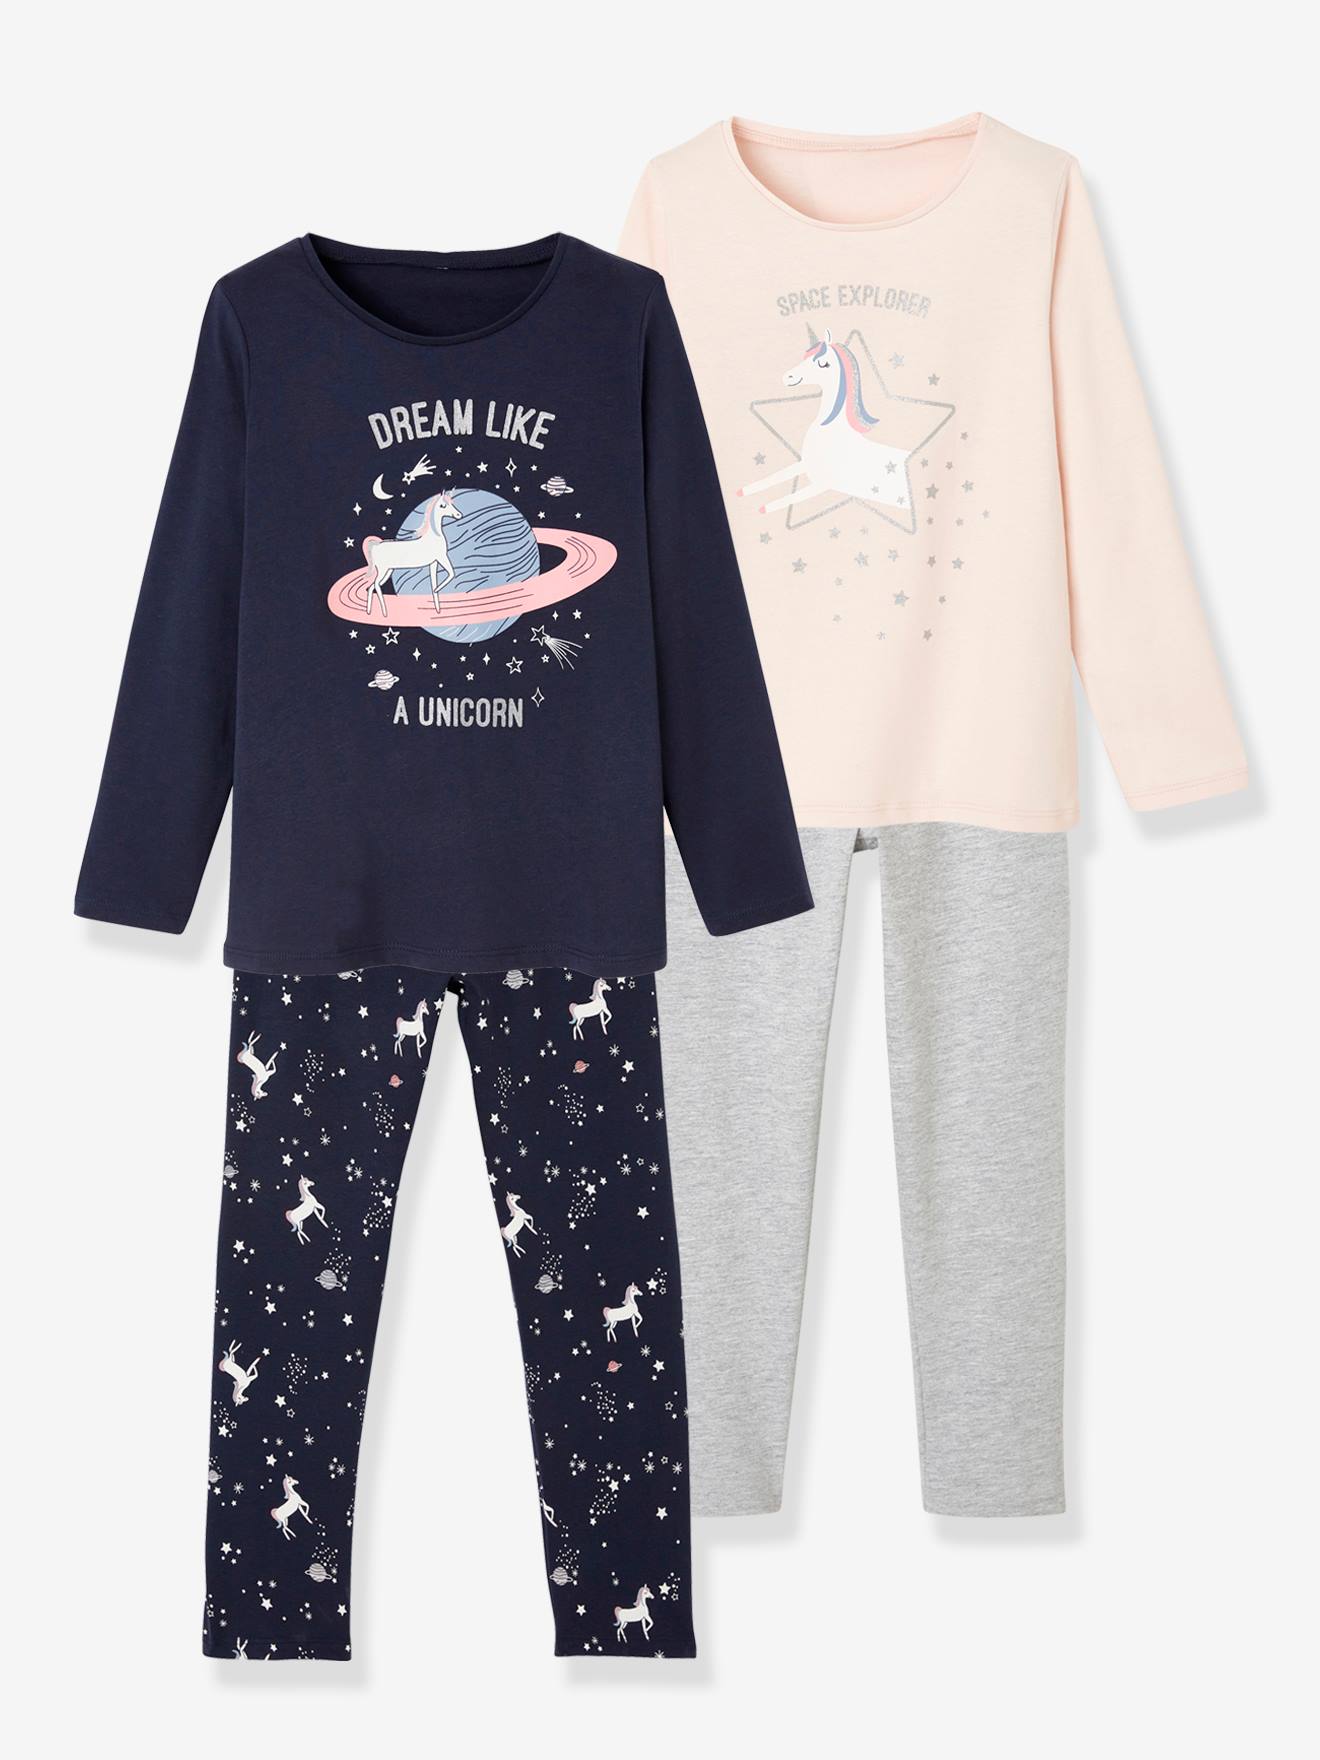 FeiliandaJJ Kinder Mädchen Pink Schlafanzug Set Baby Mädchen Pinguin Drucken Langarm Top+Hosen Nachtwäsche Pyjamas Kleidungs Set